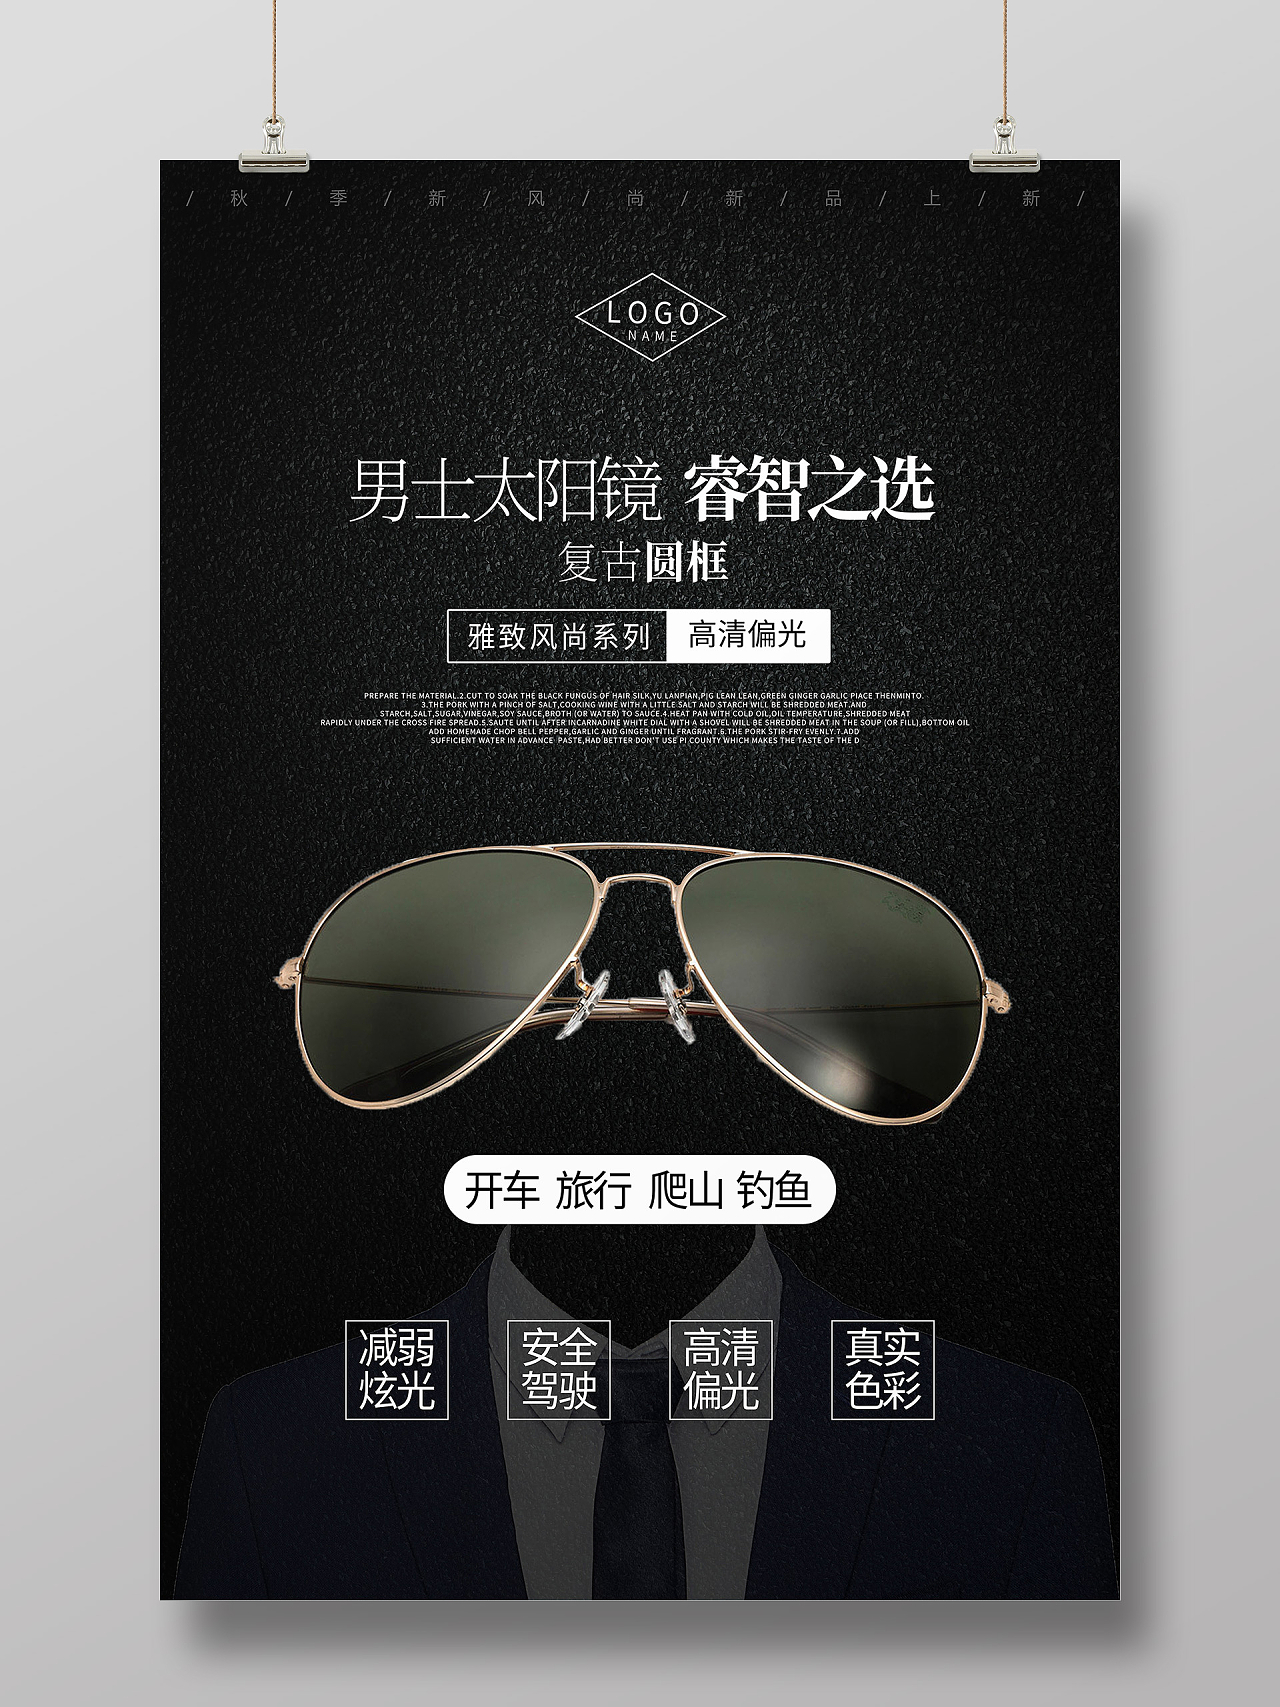 黑色简约男士太阳眼镜睿智之选海报设计男士太阳眼镜海报设计